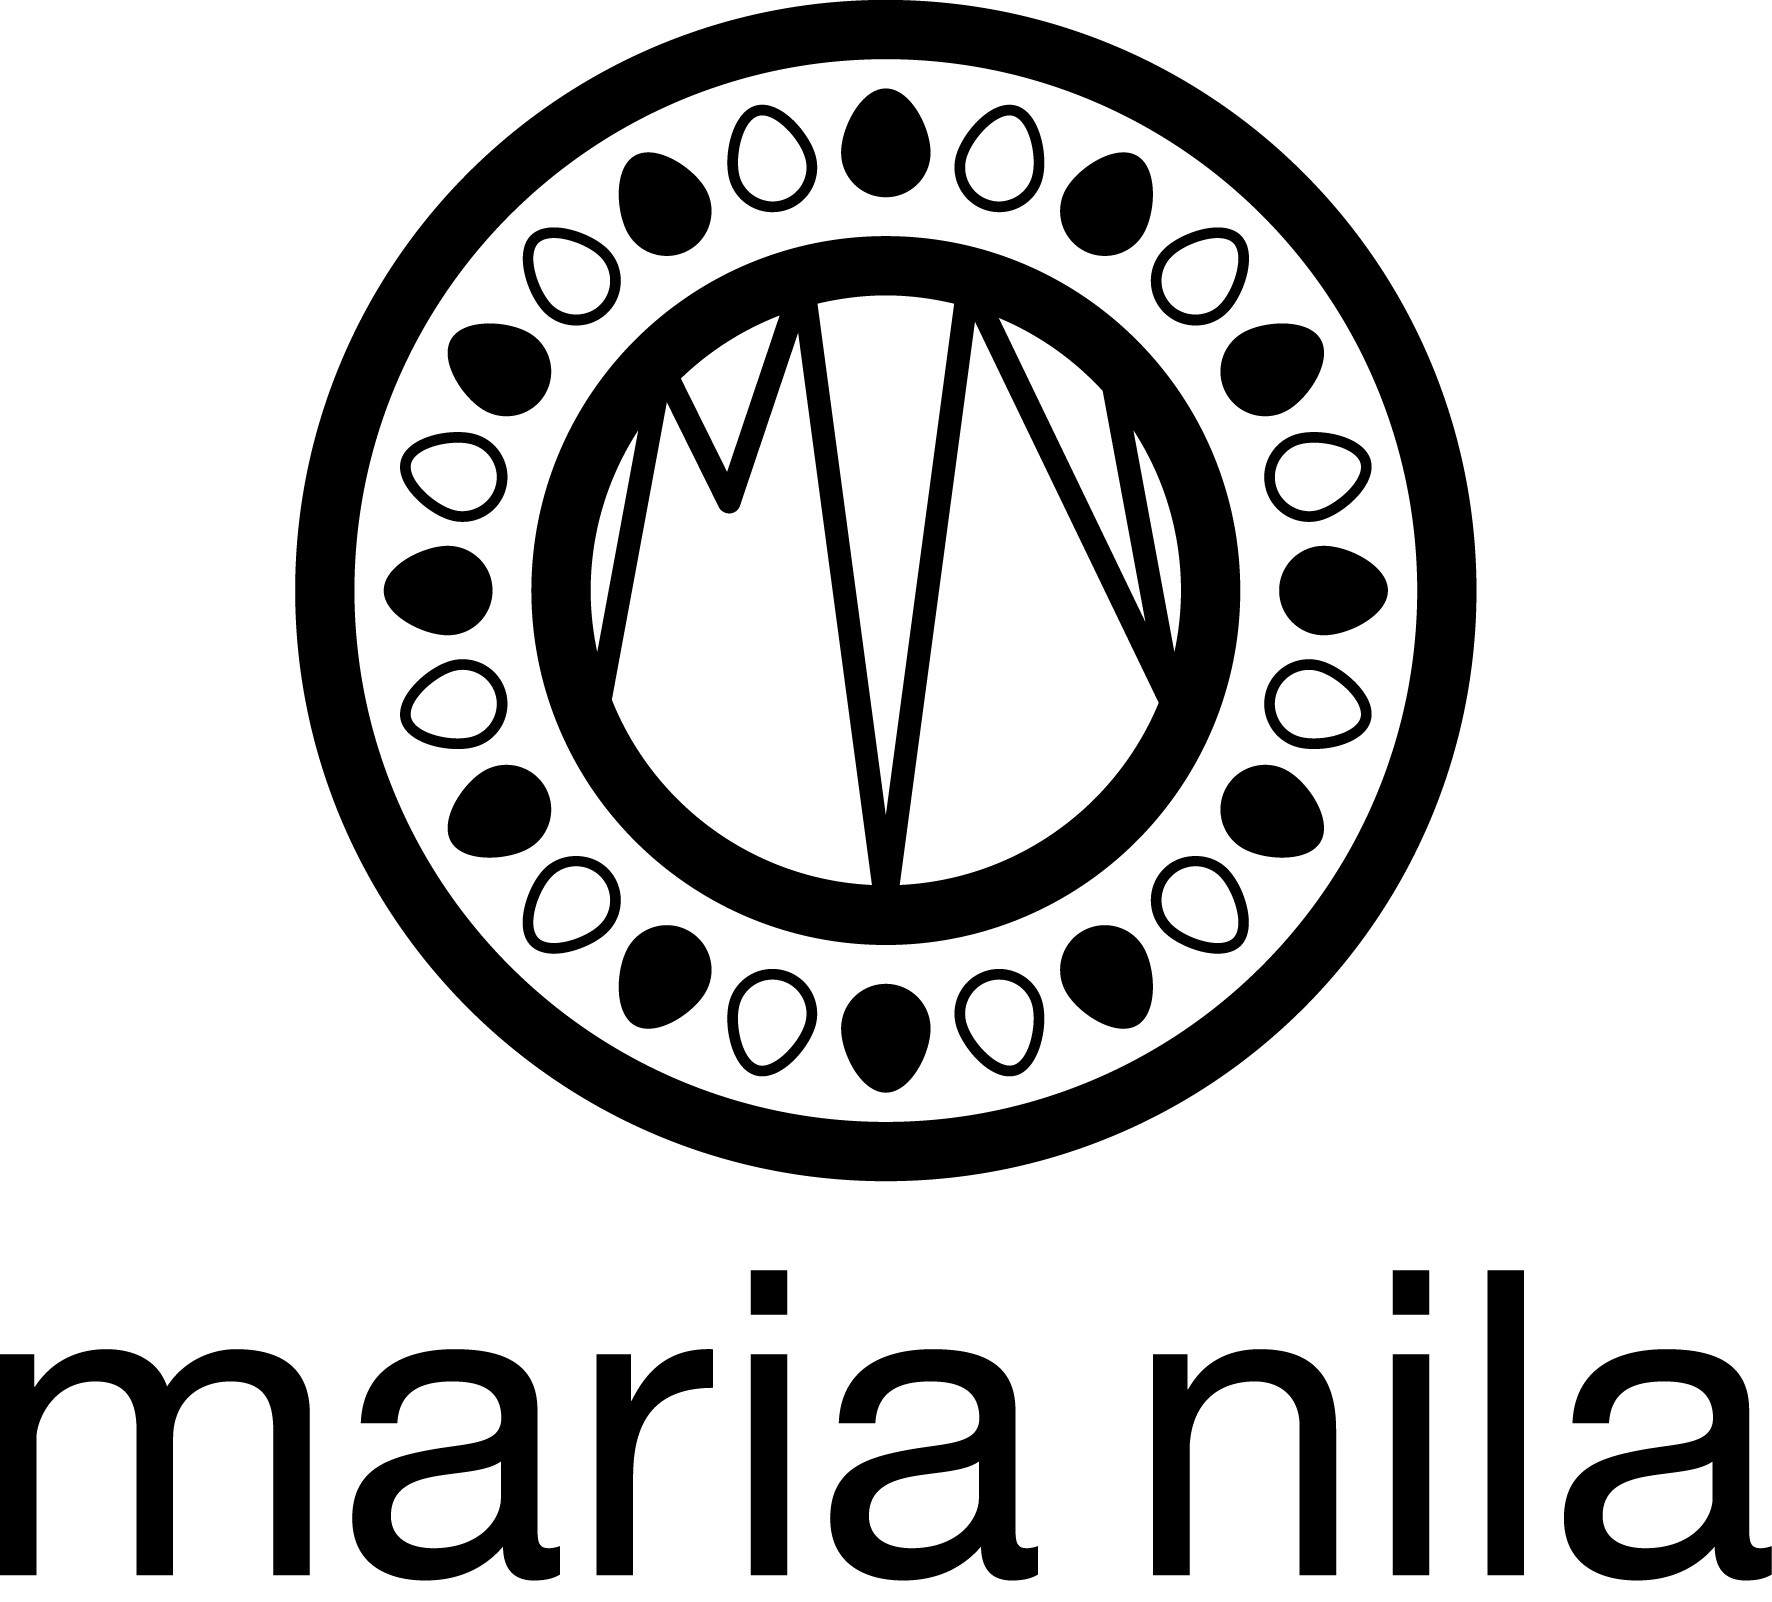 Maria Nila AB